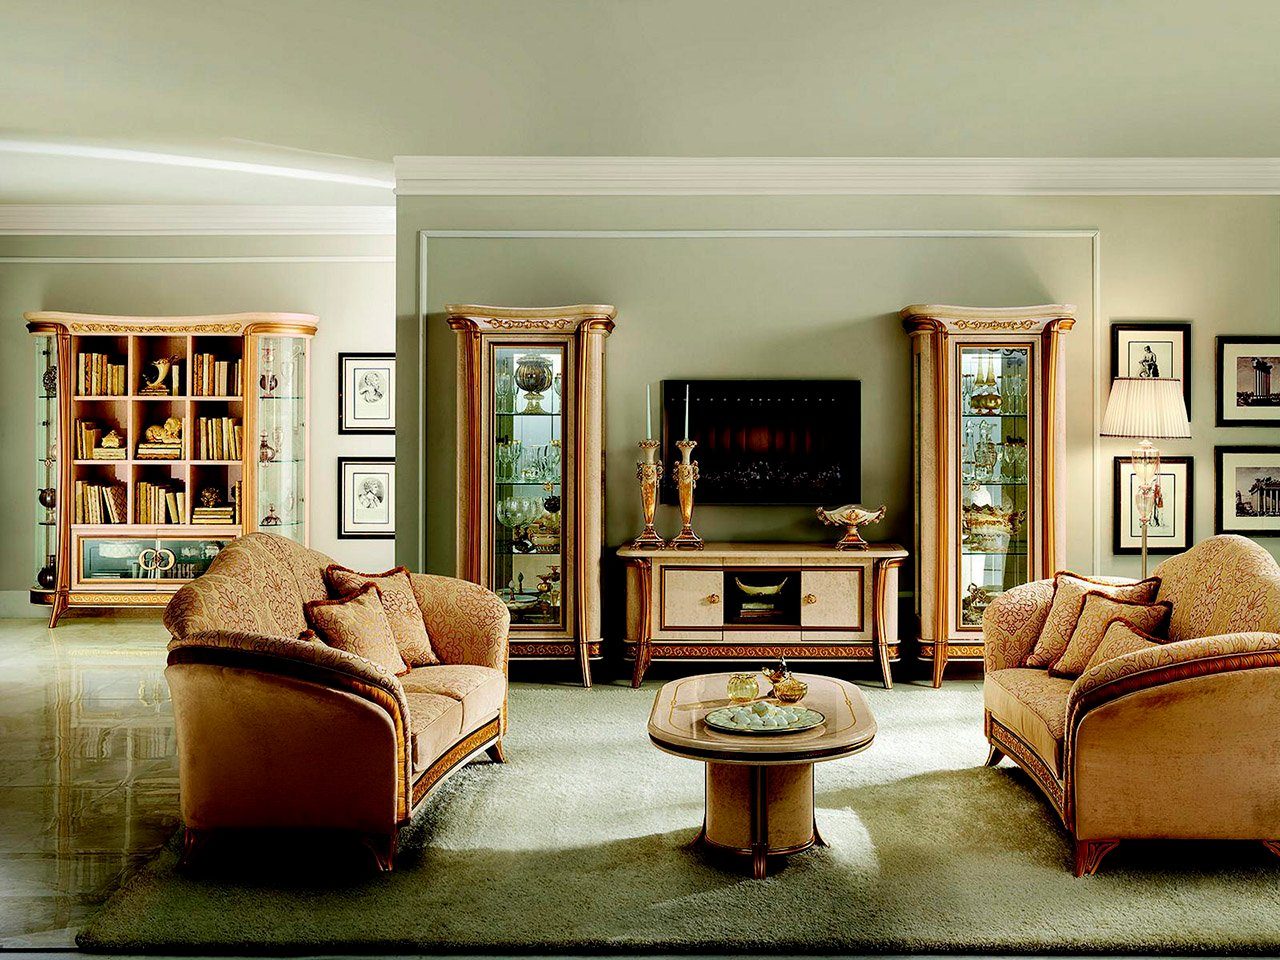 JVmoebel Wohnzimmer-Set, arredoclassic™ Sofagarnitur Sofa Designer 2 Couch + Wohnzimmer Möbel Barock Klassisch 3